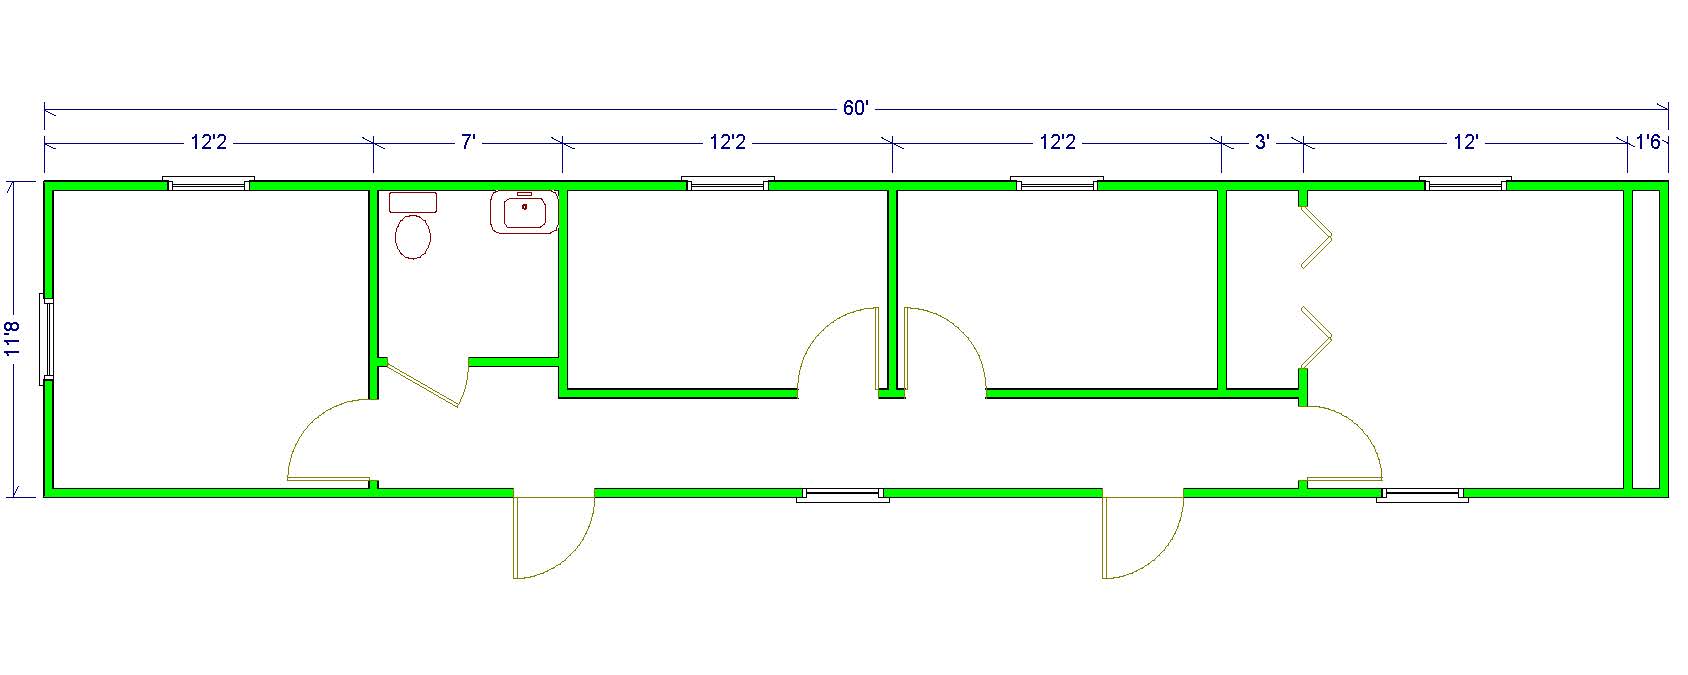 12'x 60' Floor Plan Image